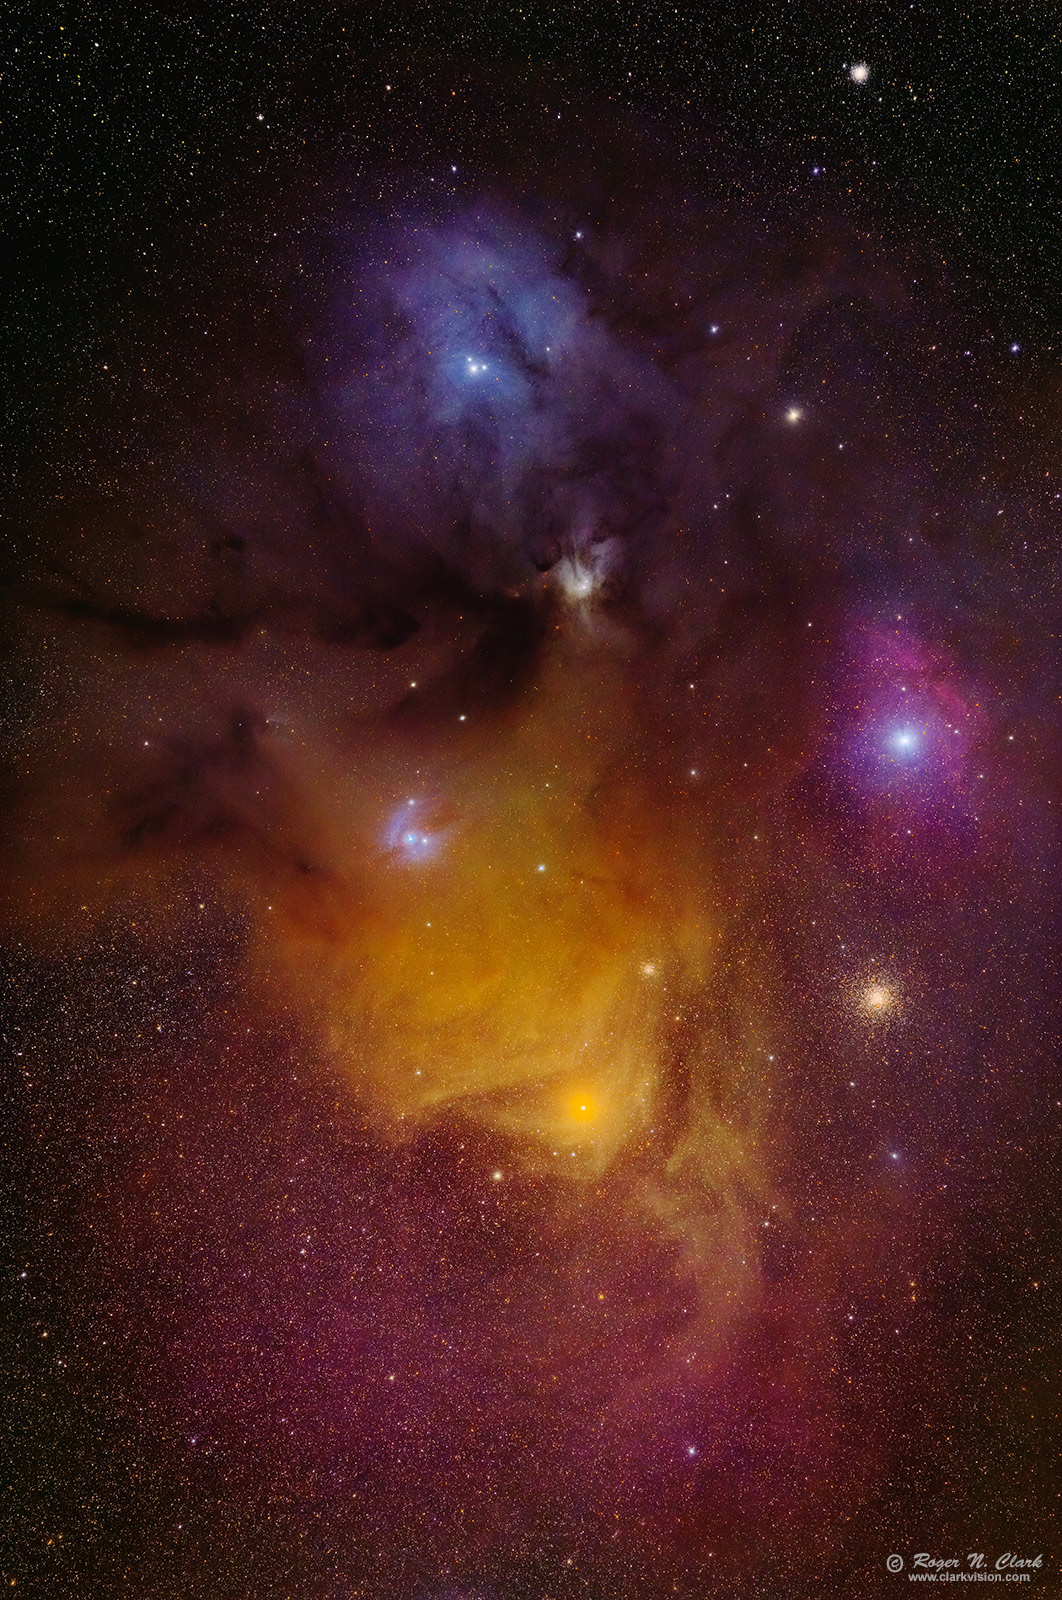 image rho-ophiuchus-rnclark-300mm-c07-2022-4C3A8827-927-av101.i-1600vs.jpg is Copyrighted by Roger N. Clark, www.clarkvision.com